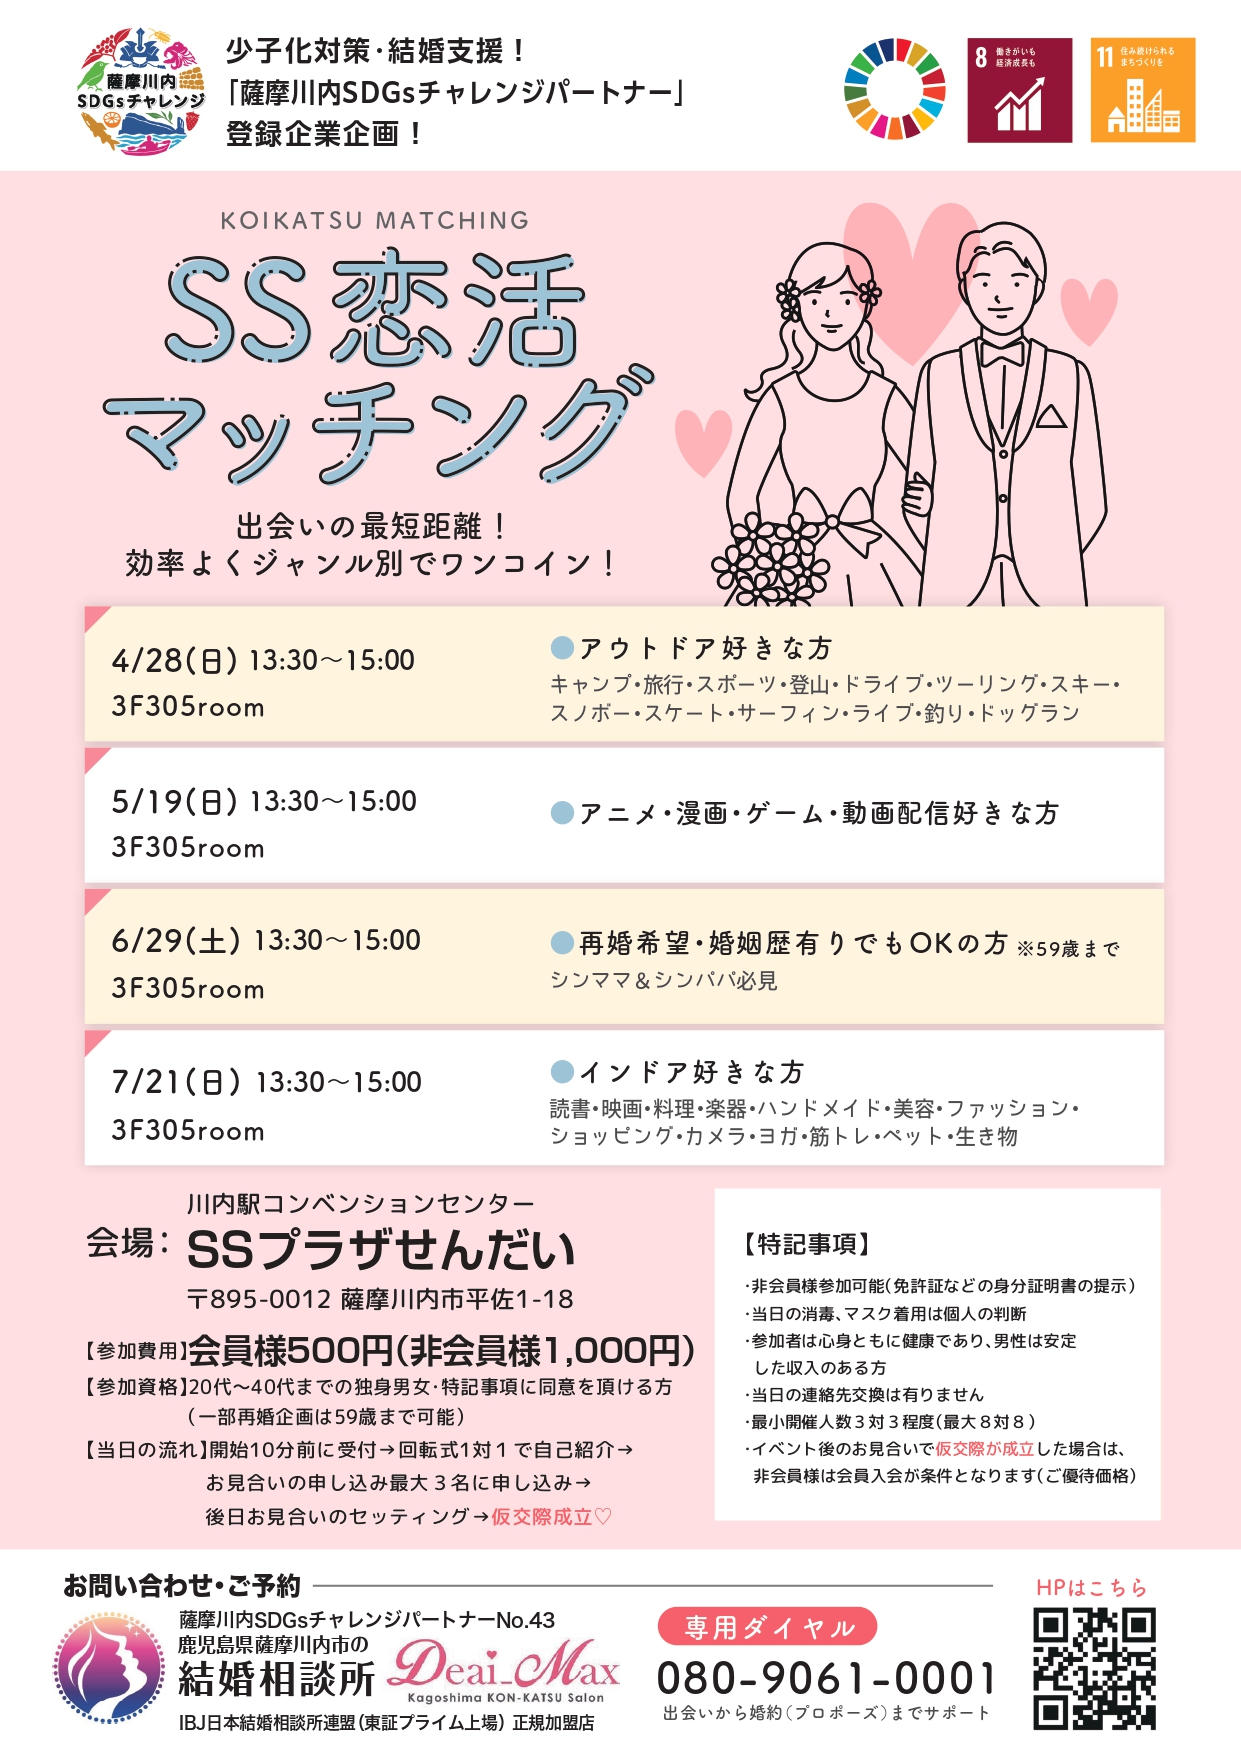 少子化対策・結婚支援！「薩摩川内SDGsチャレンジパートナー」登録企業企画！SS恋活マッチング